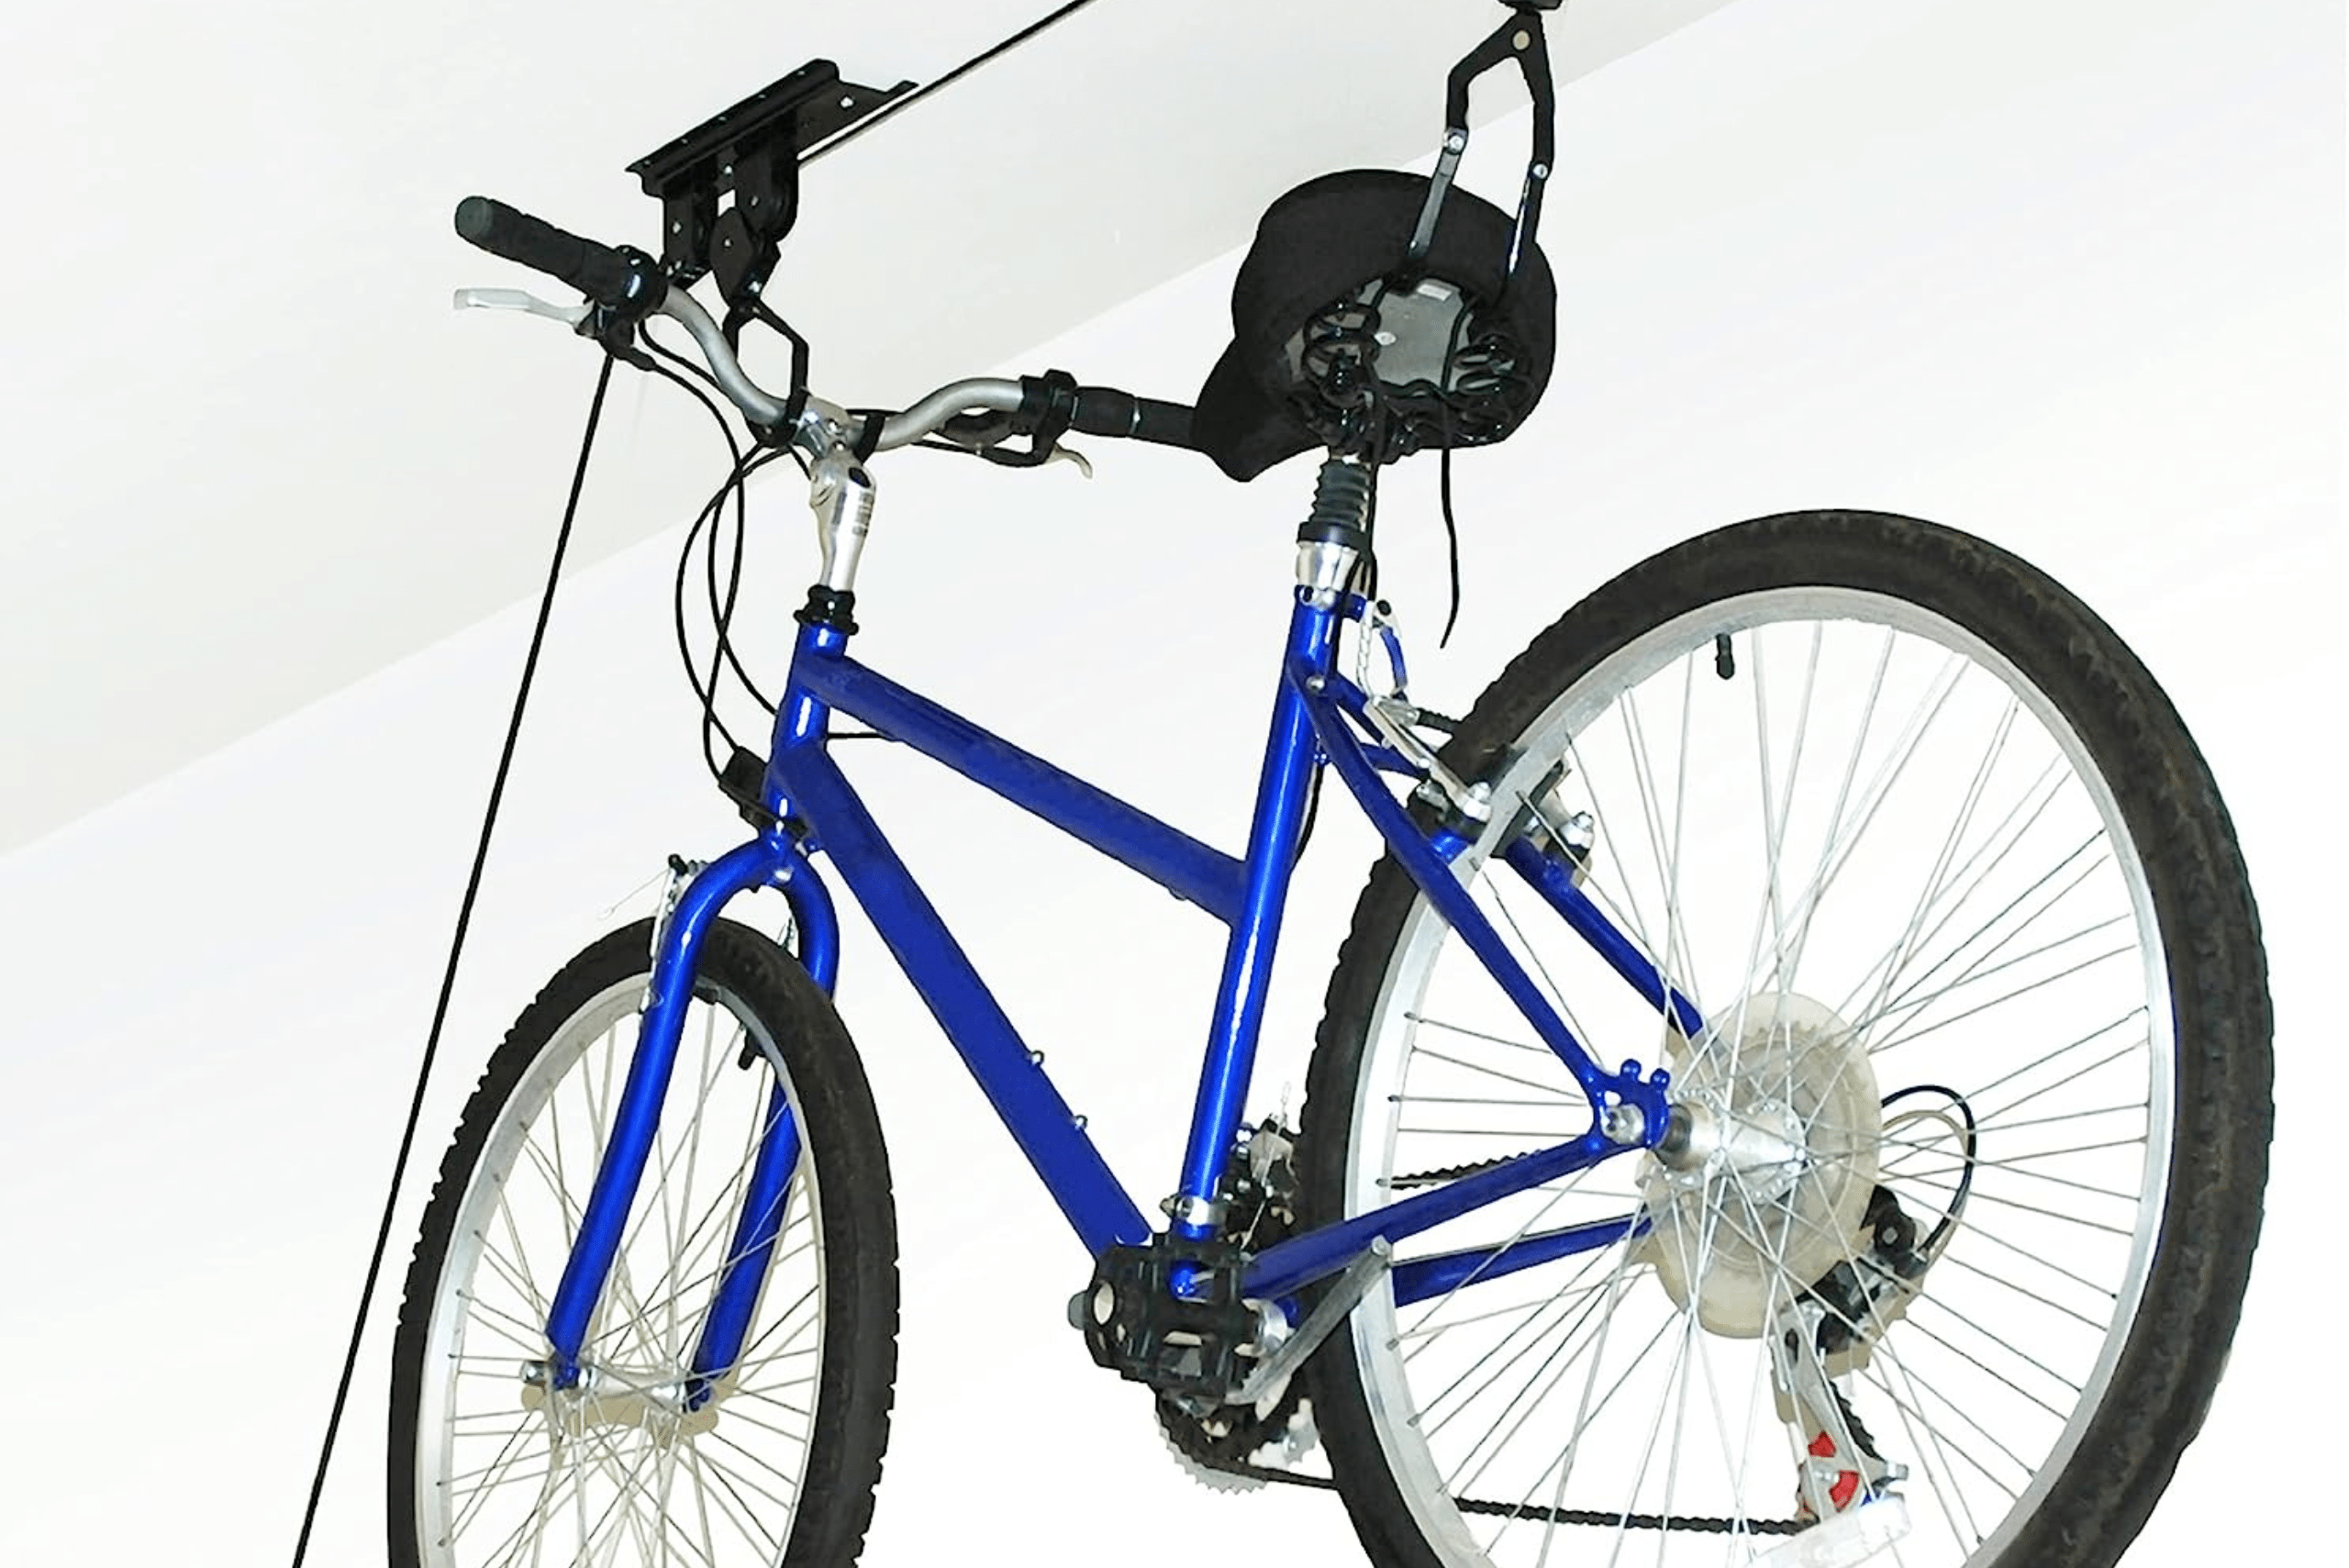 Bike mounted on a ceiling garage bike rack.